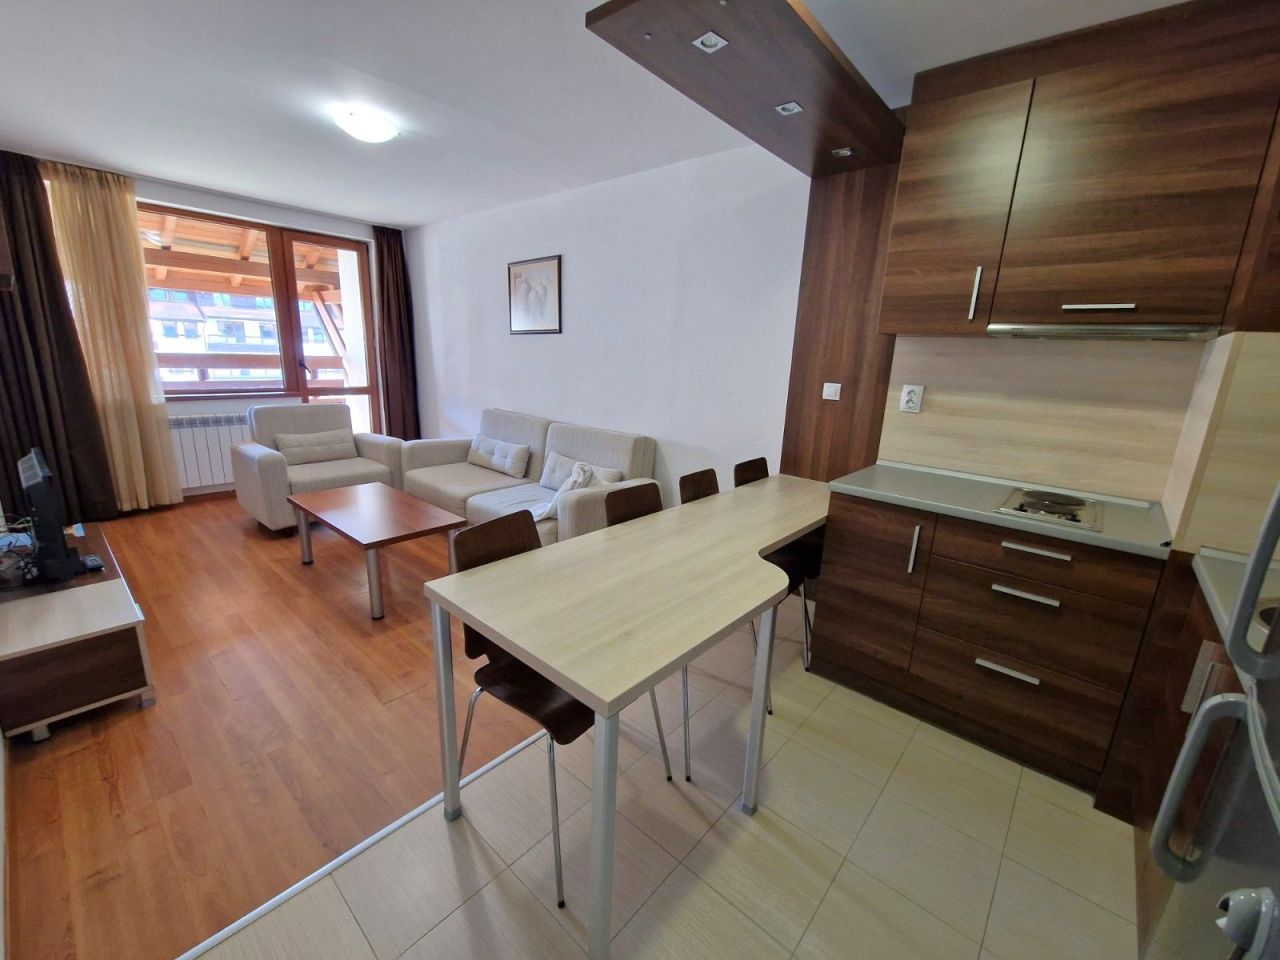 Apartment in Bansko, Bulgaria, 88 sq.m - picture 1